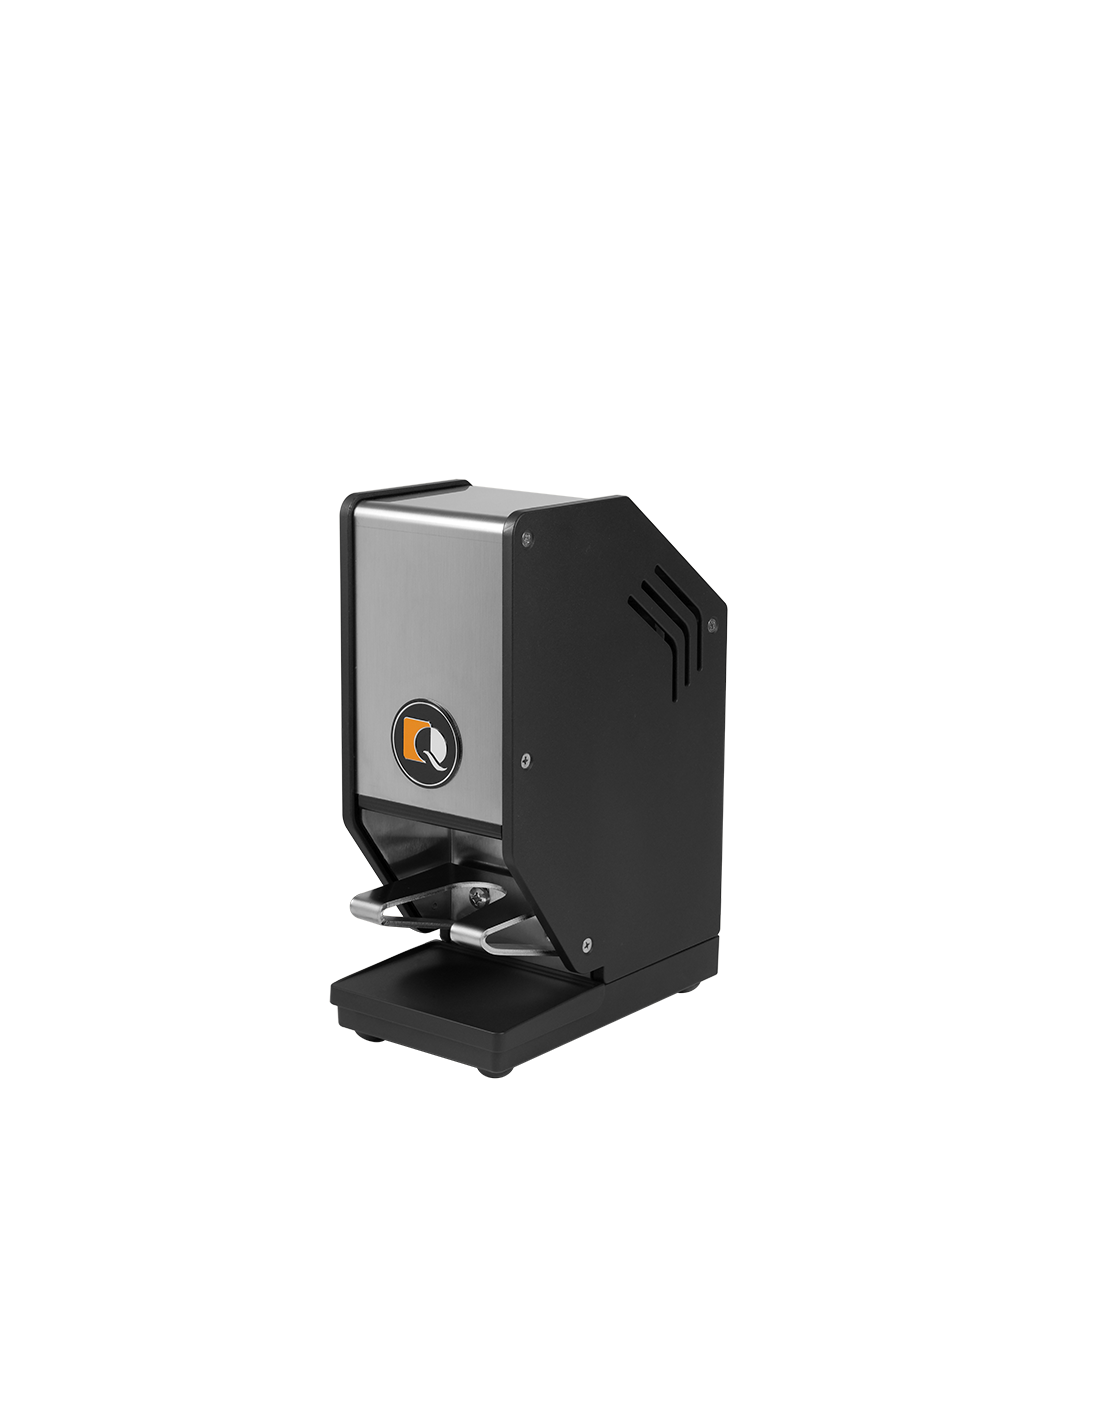 Pressa Caffè automatico - Pressino Ø 58/Ø 53 mm - Velocità 0,60 sec - cm 10.9 x 19.6 x 27.6 h